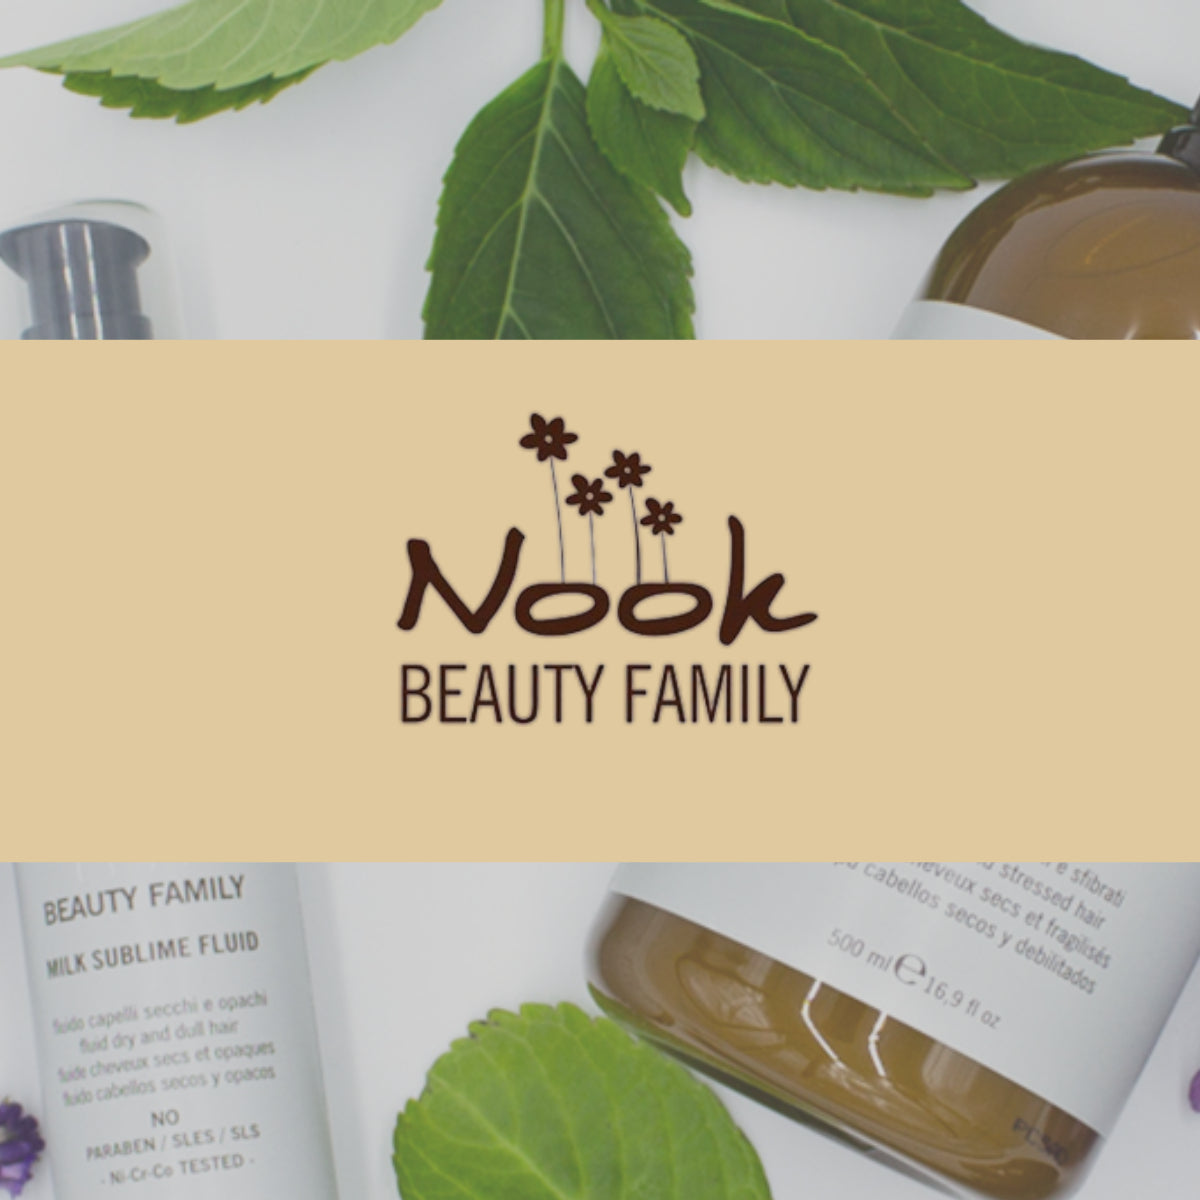 Nook Beauty Family